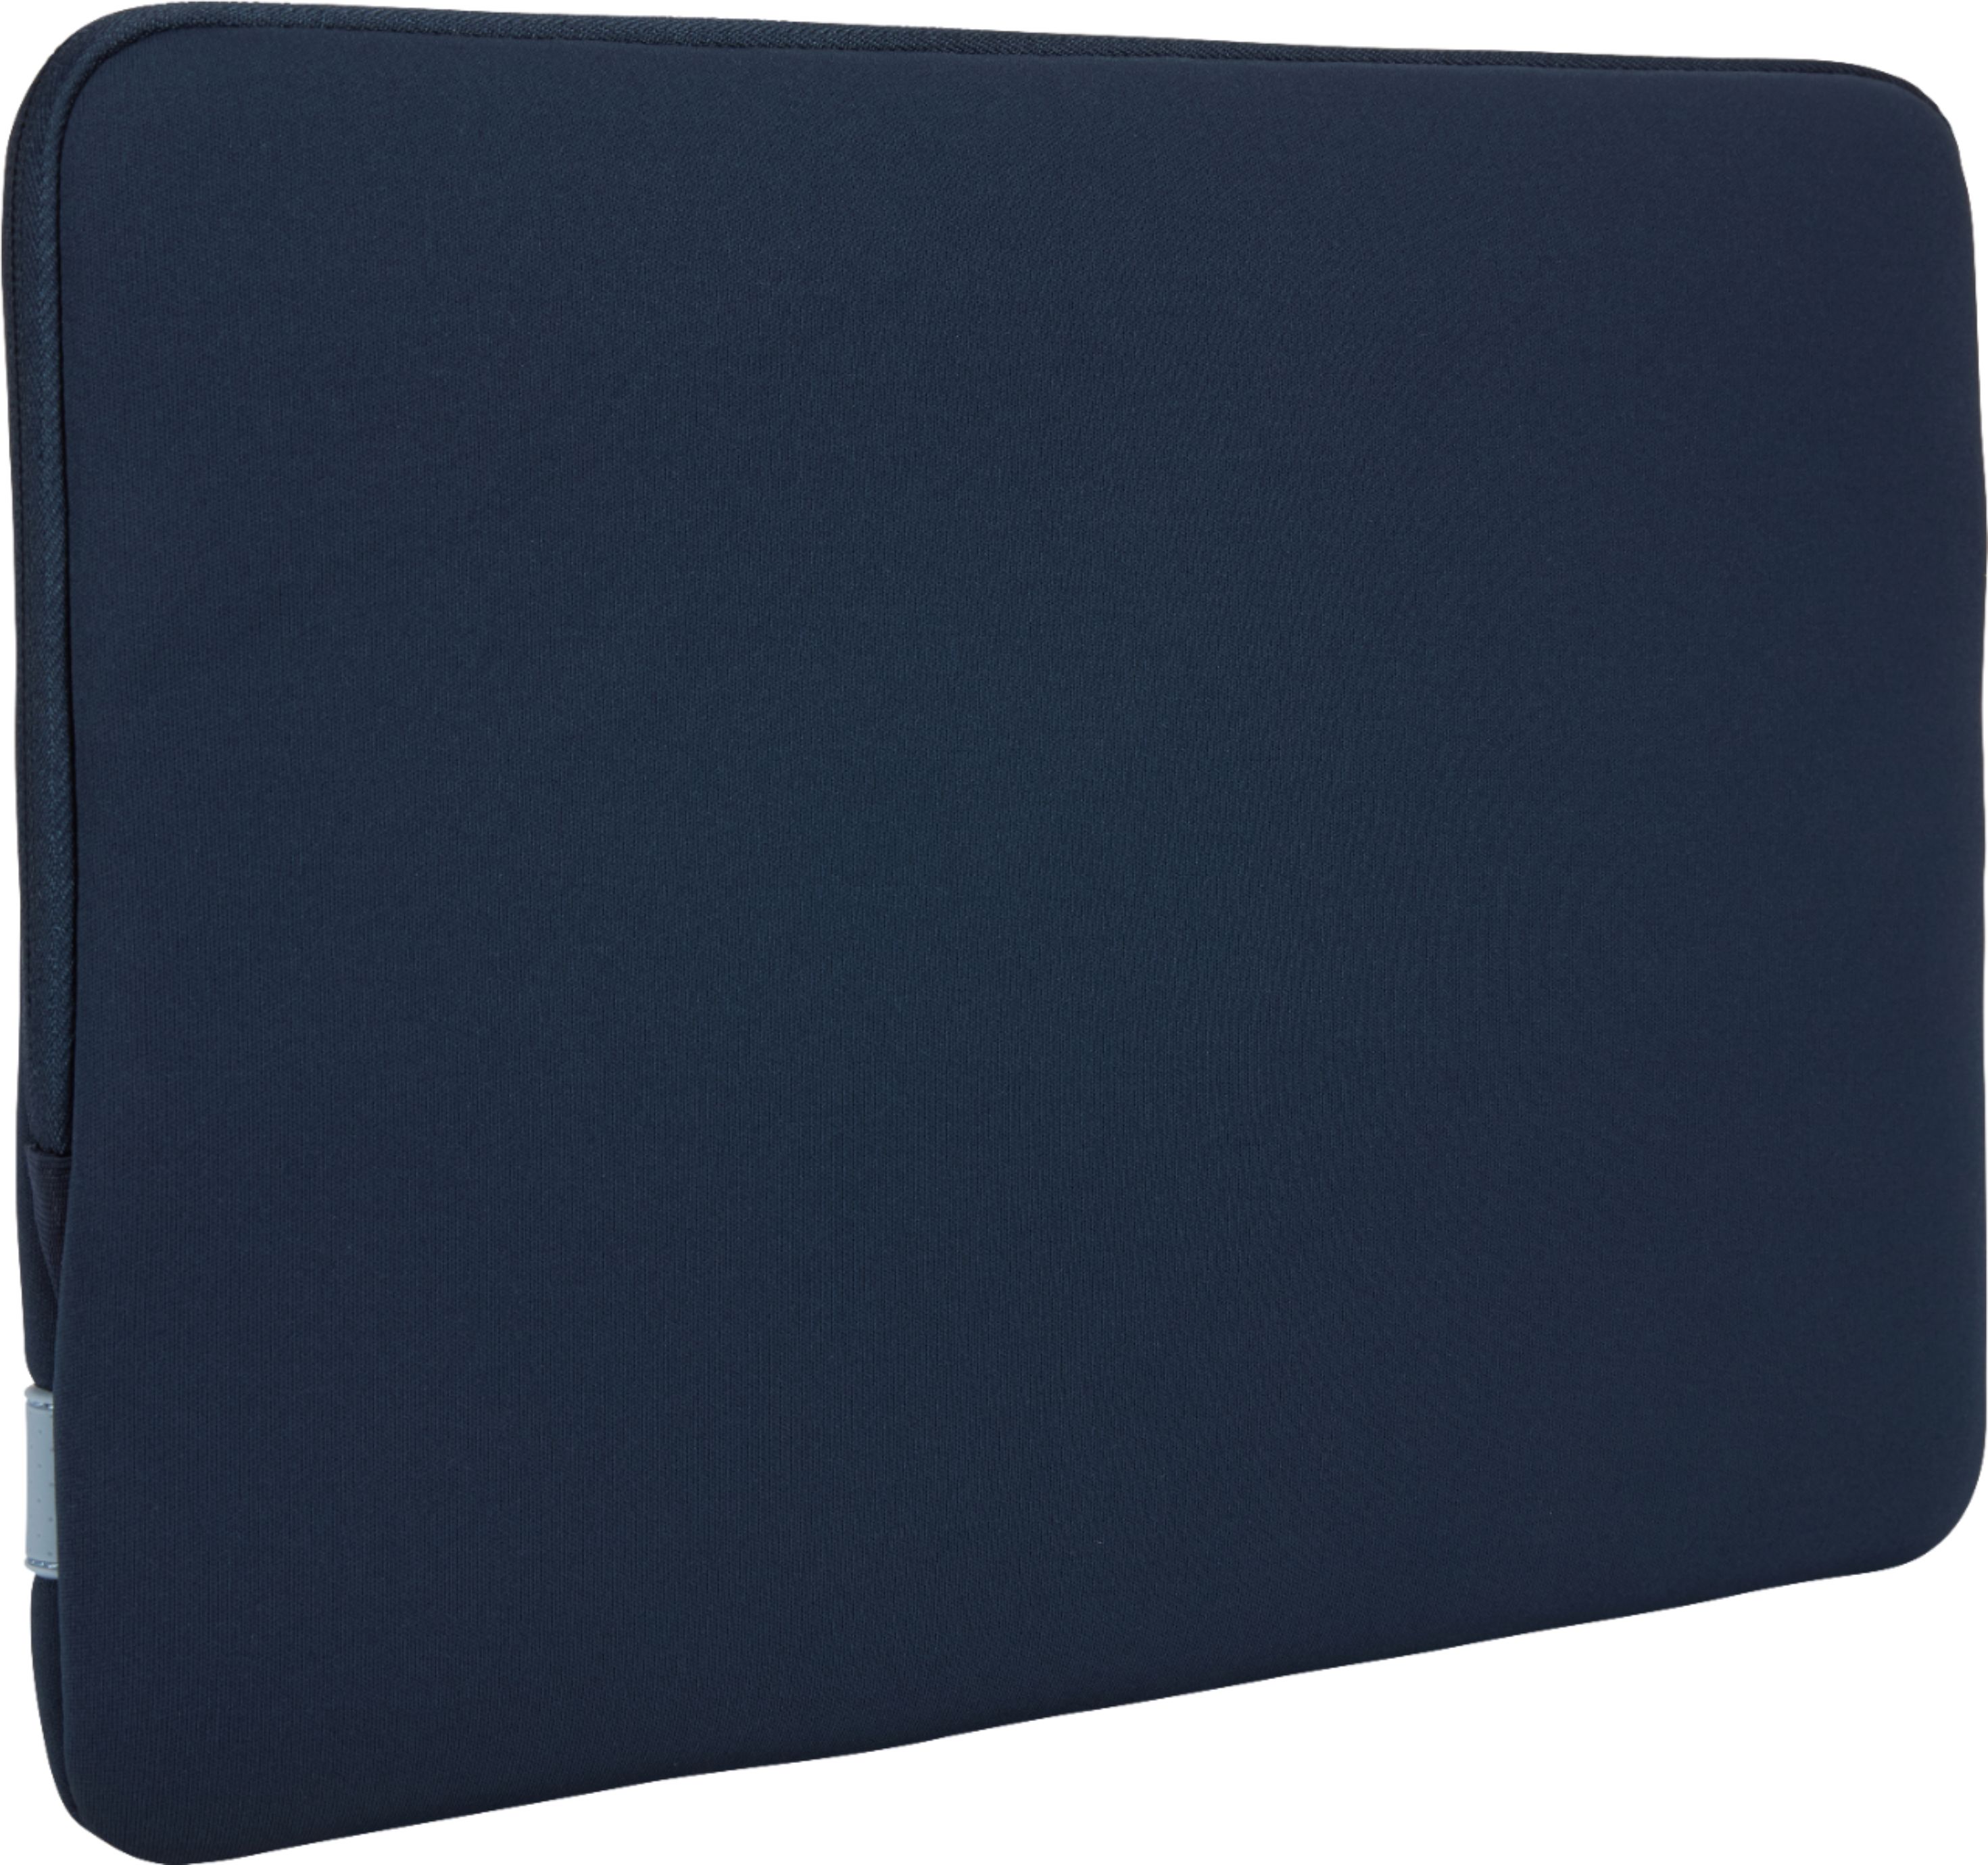 Macbook case 13 inch Macbook Pro case Macbook Air Macbook Pro 13 Macbook Air Macbook sleeve Laptop sleeve Macbook case